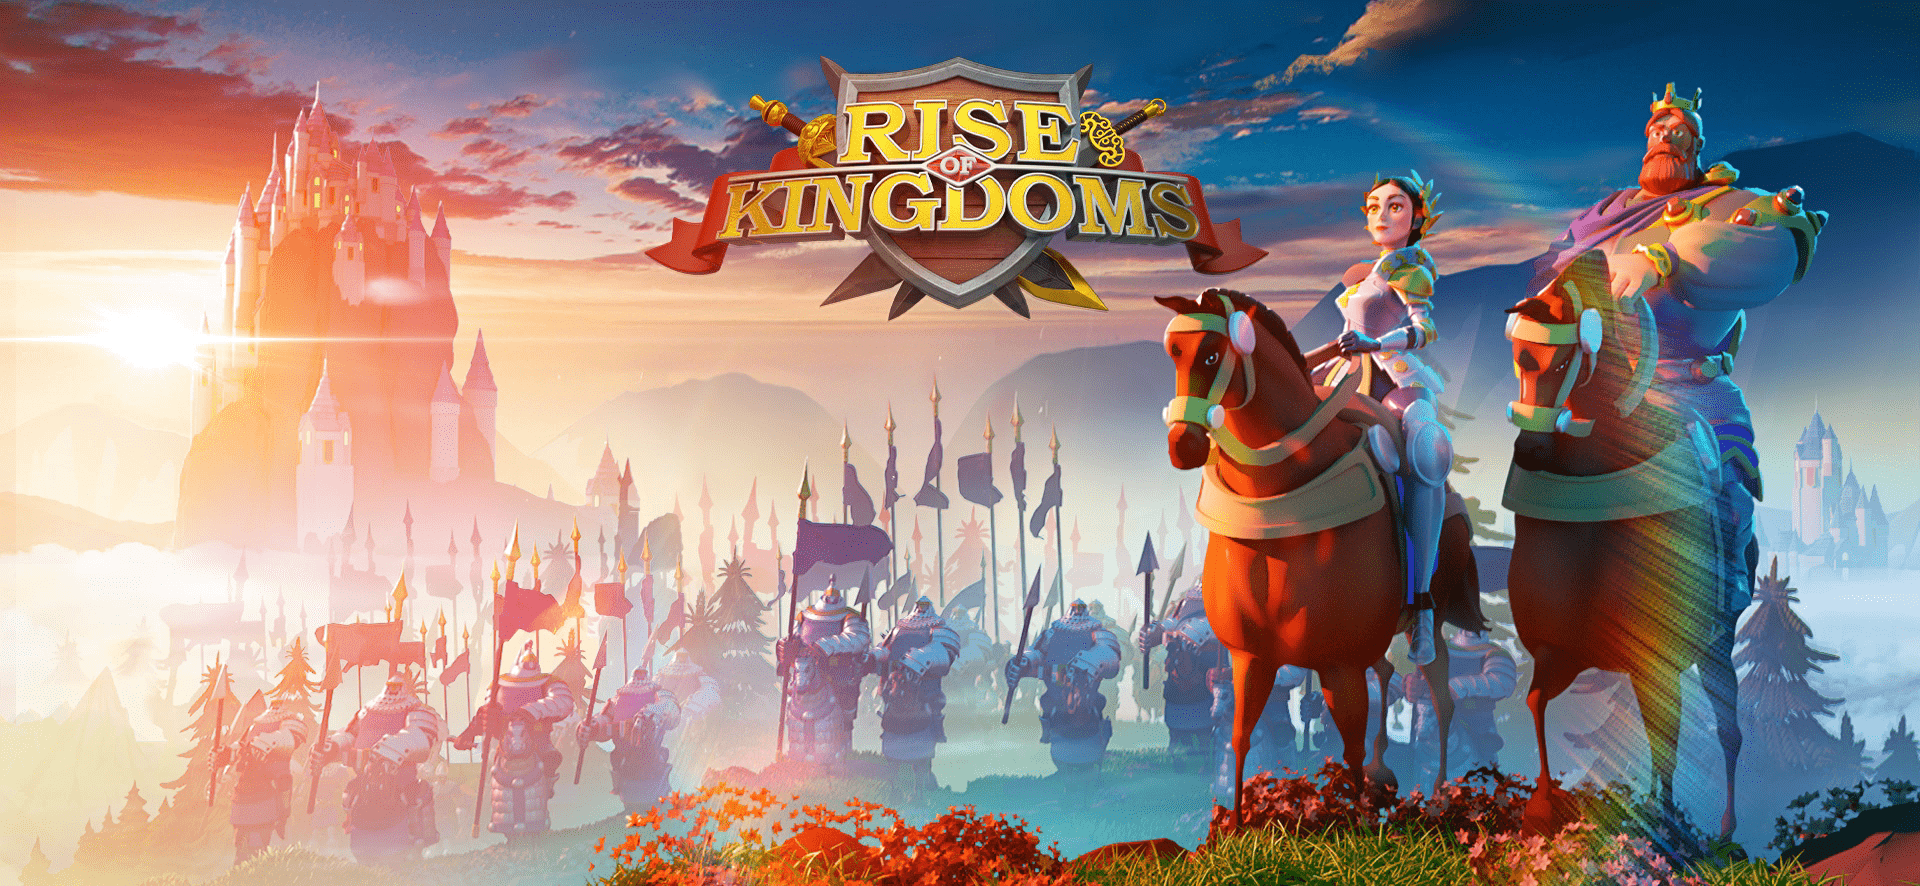 Image de présentation de l'article : Comment monter son village en puissance dans le jeu Rise of Kingdoms ?